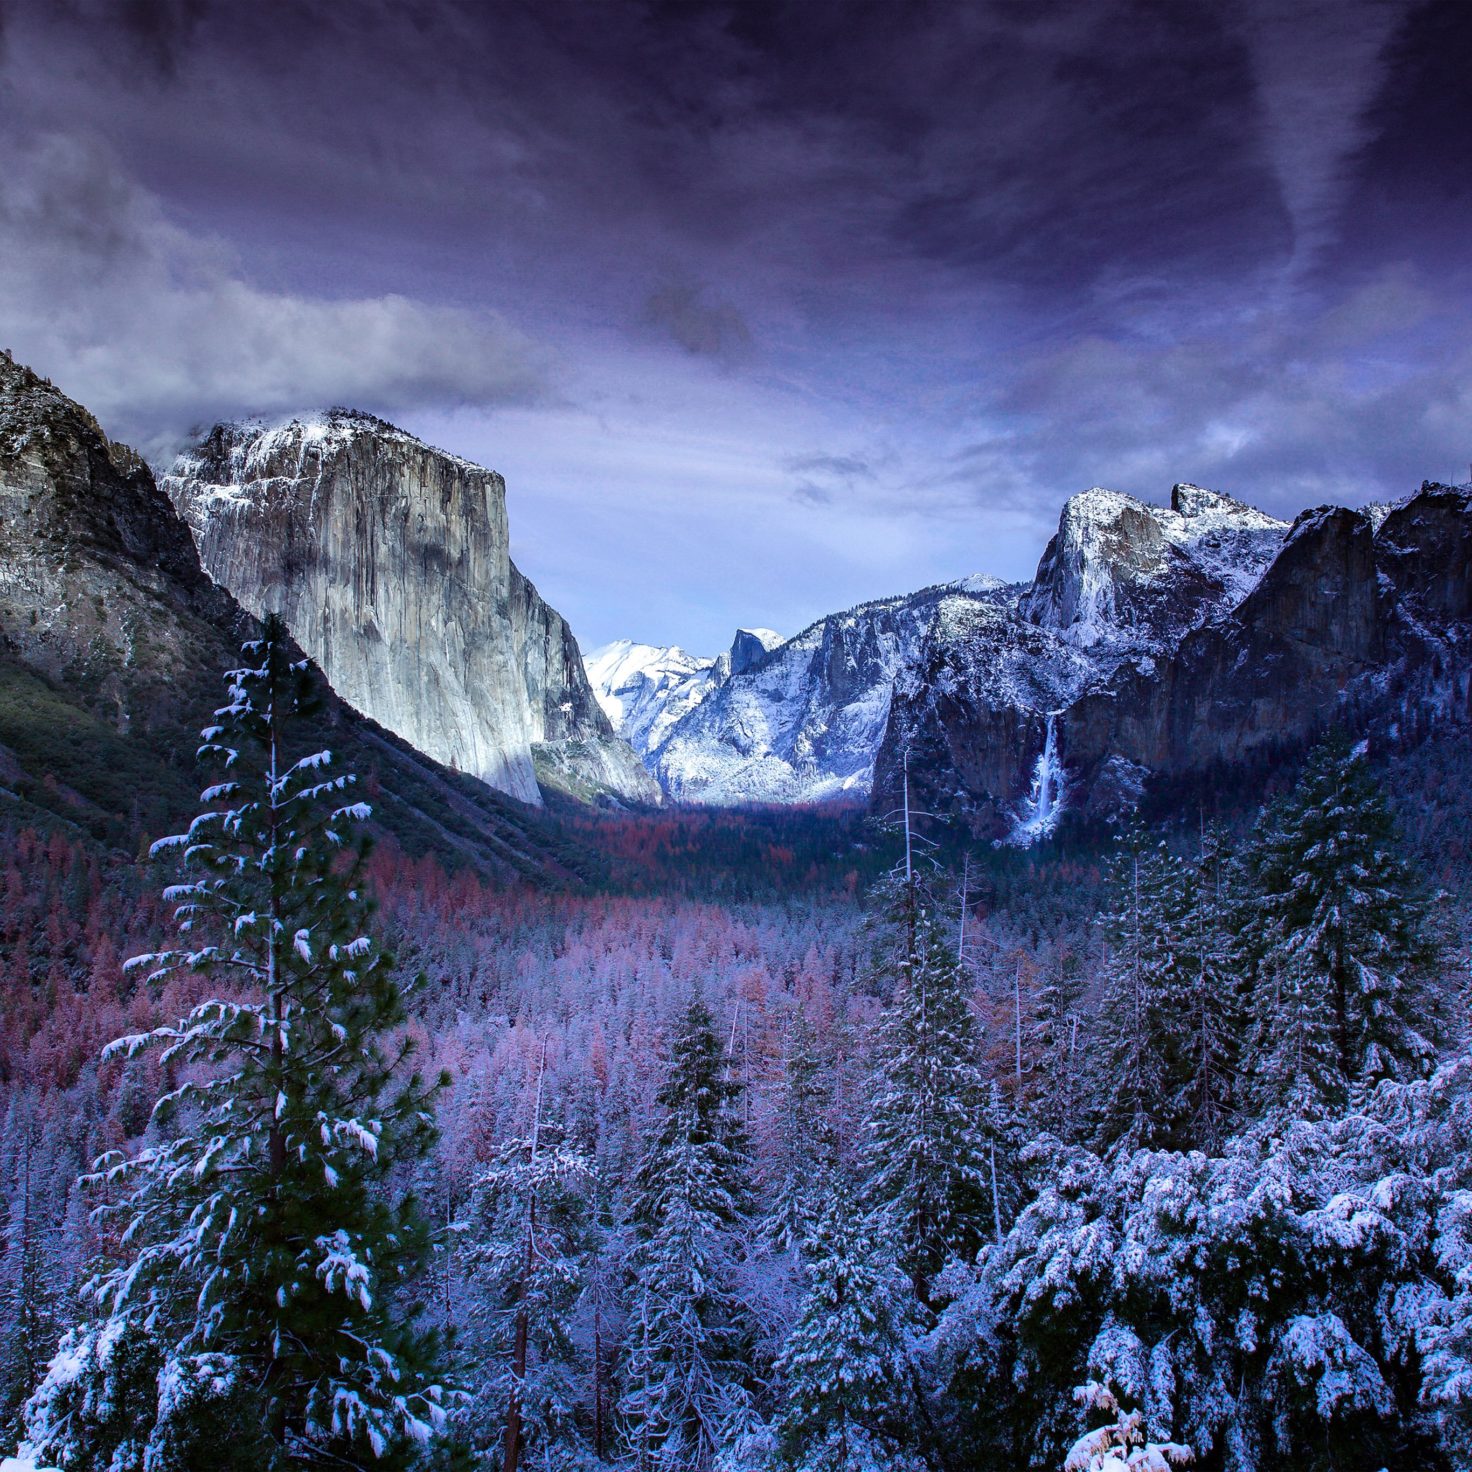 Tìm kiếm ảnh nền mùa đông độc đáo? Những bức ảnh nền mùa đông sẽ làm bạn phải ngất ngây. Từ cánh rừng tuyết trắng đến những ngọn núi đầy tuyết trắng, ảnh nền mùa đông sẽ truyền tải đầy đủ cảm xúc lạnh và tươi mới.